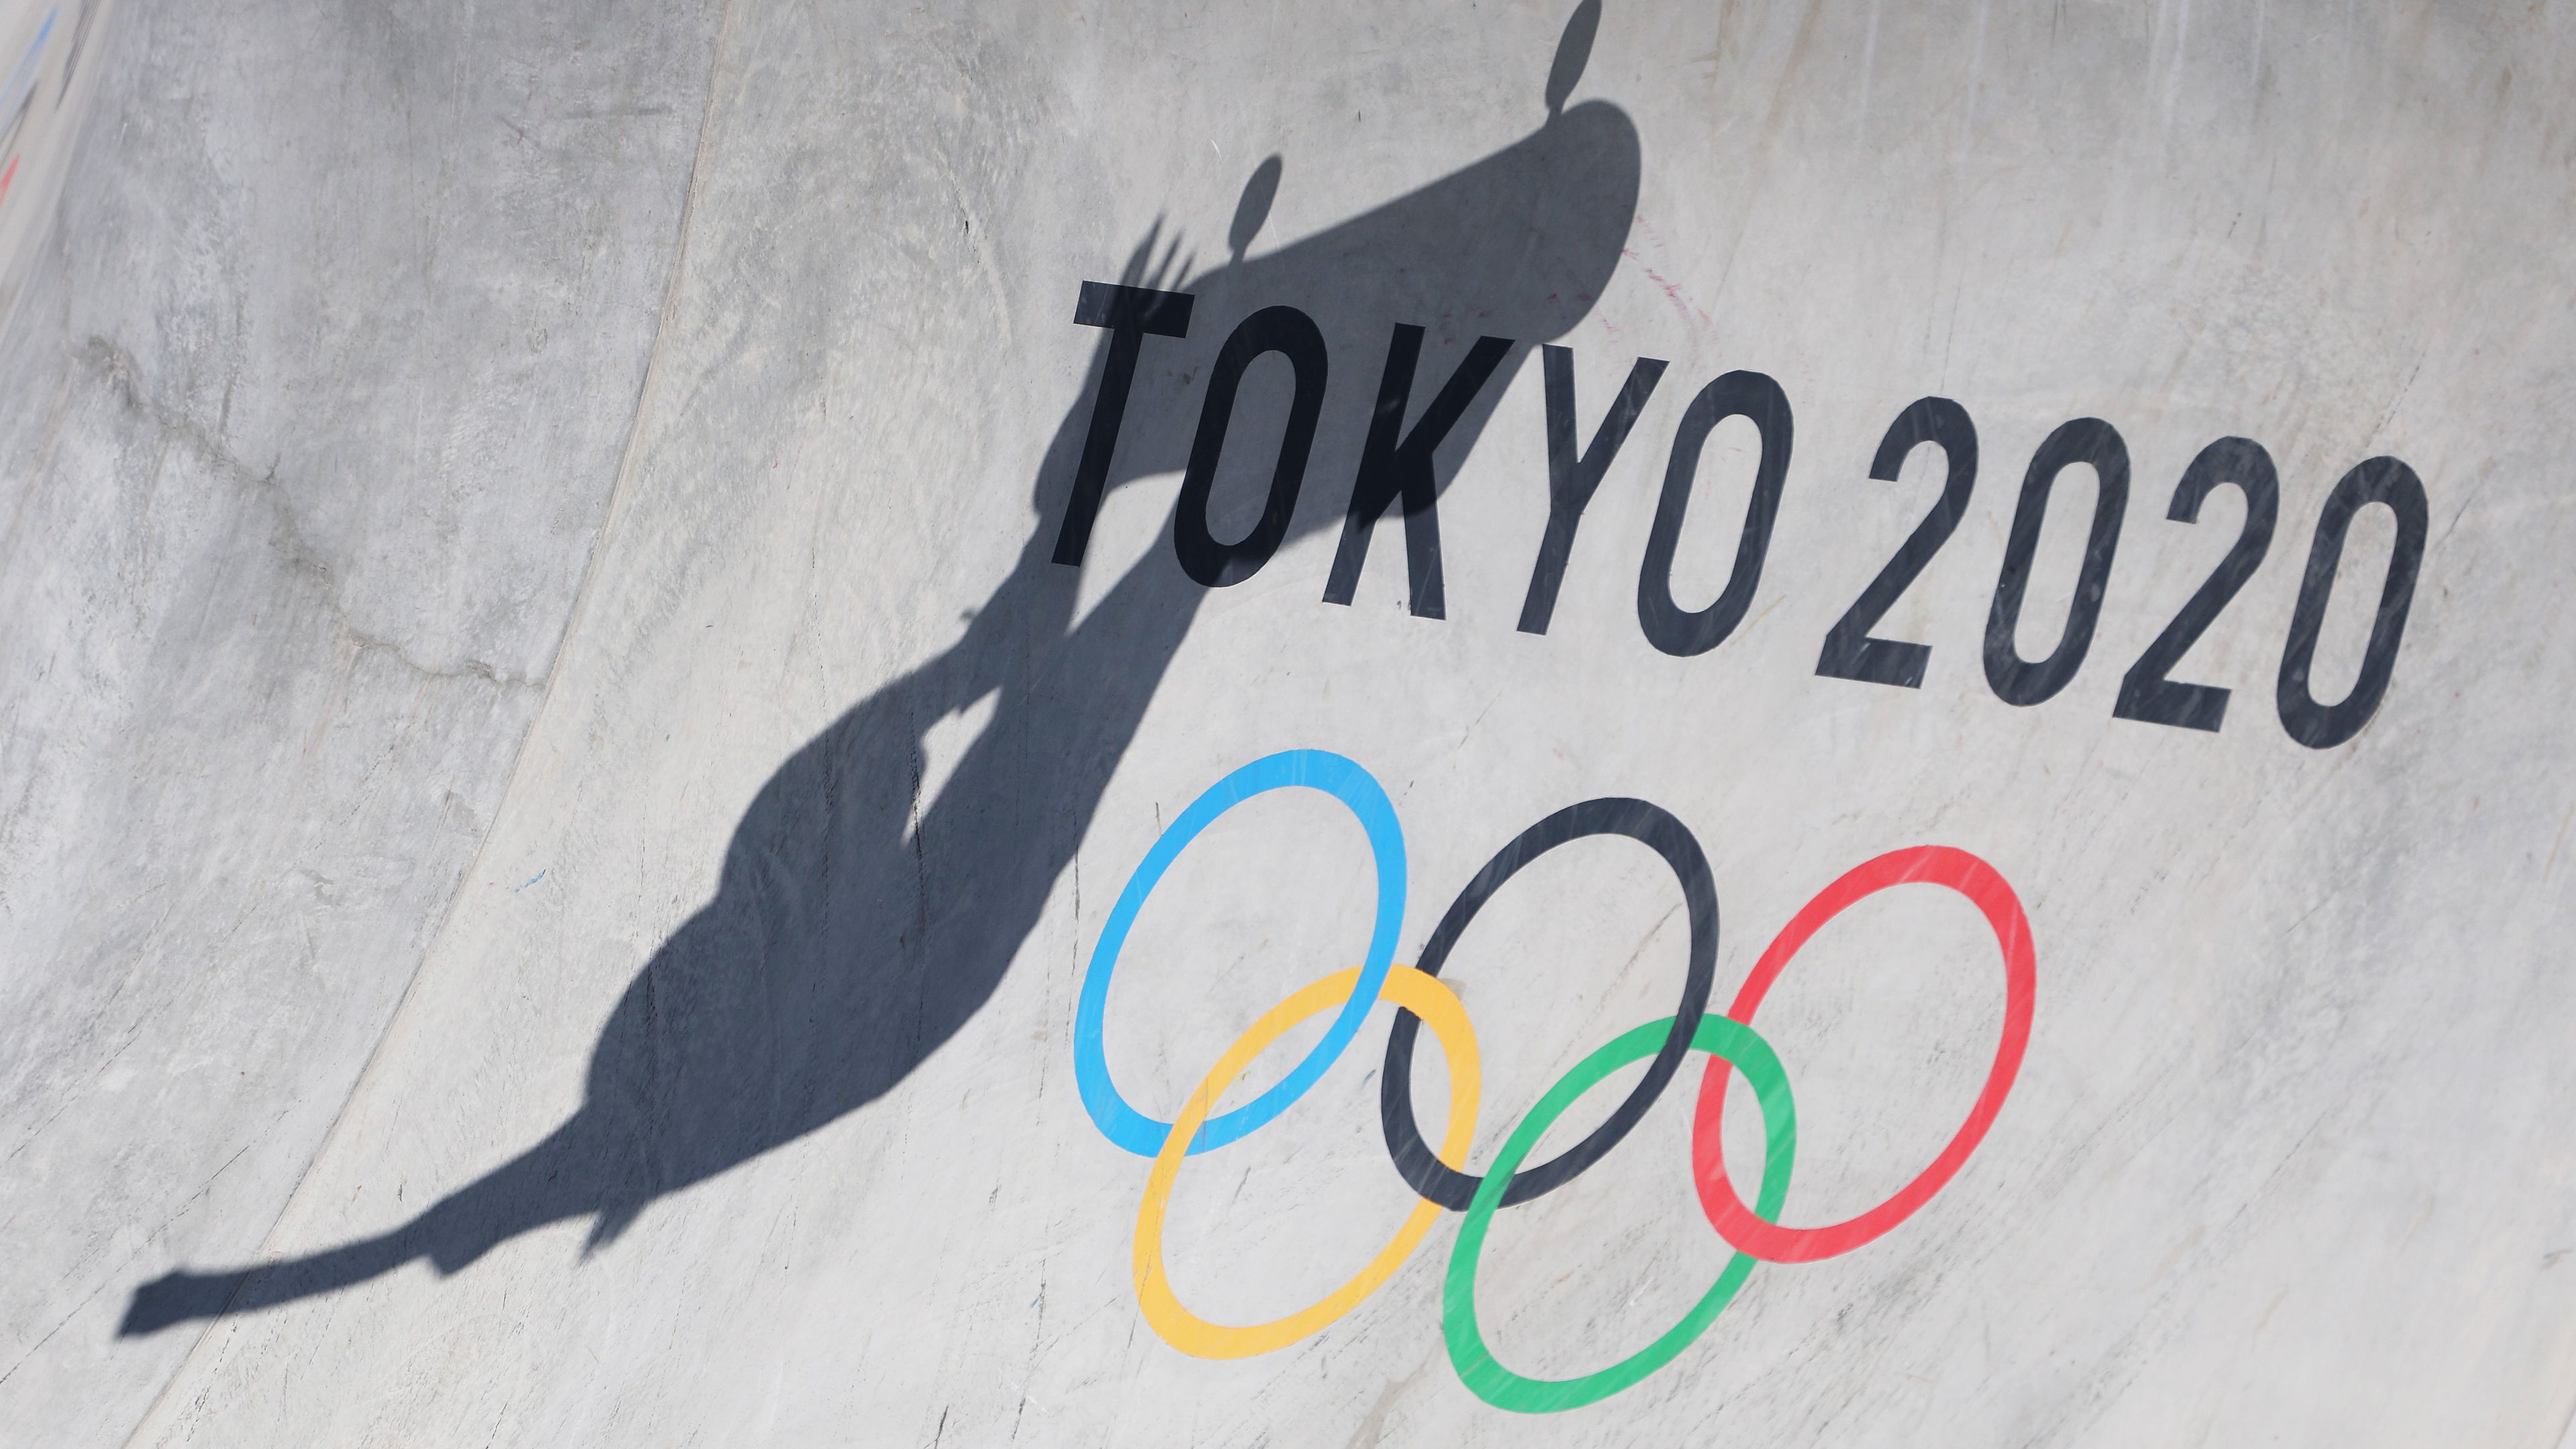 Újabb tagot tartóztattak le a tokiói olimpia korábbi szervezőbizottságából